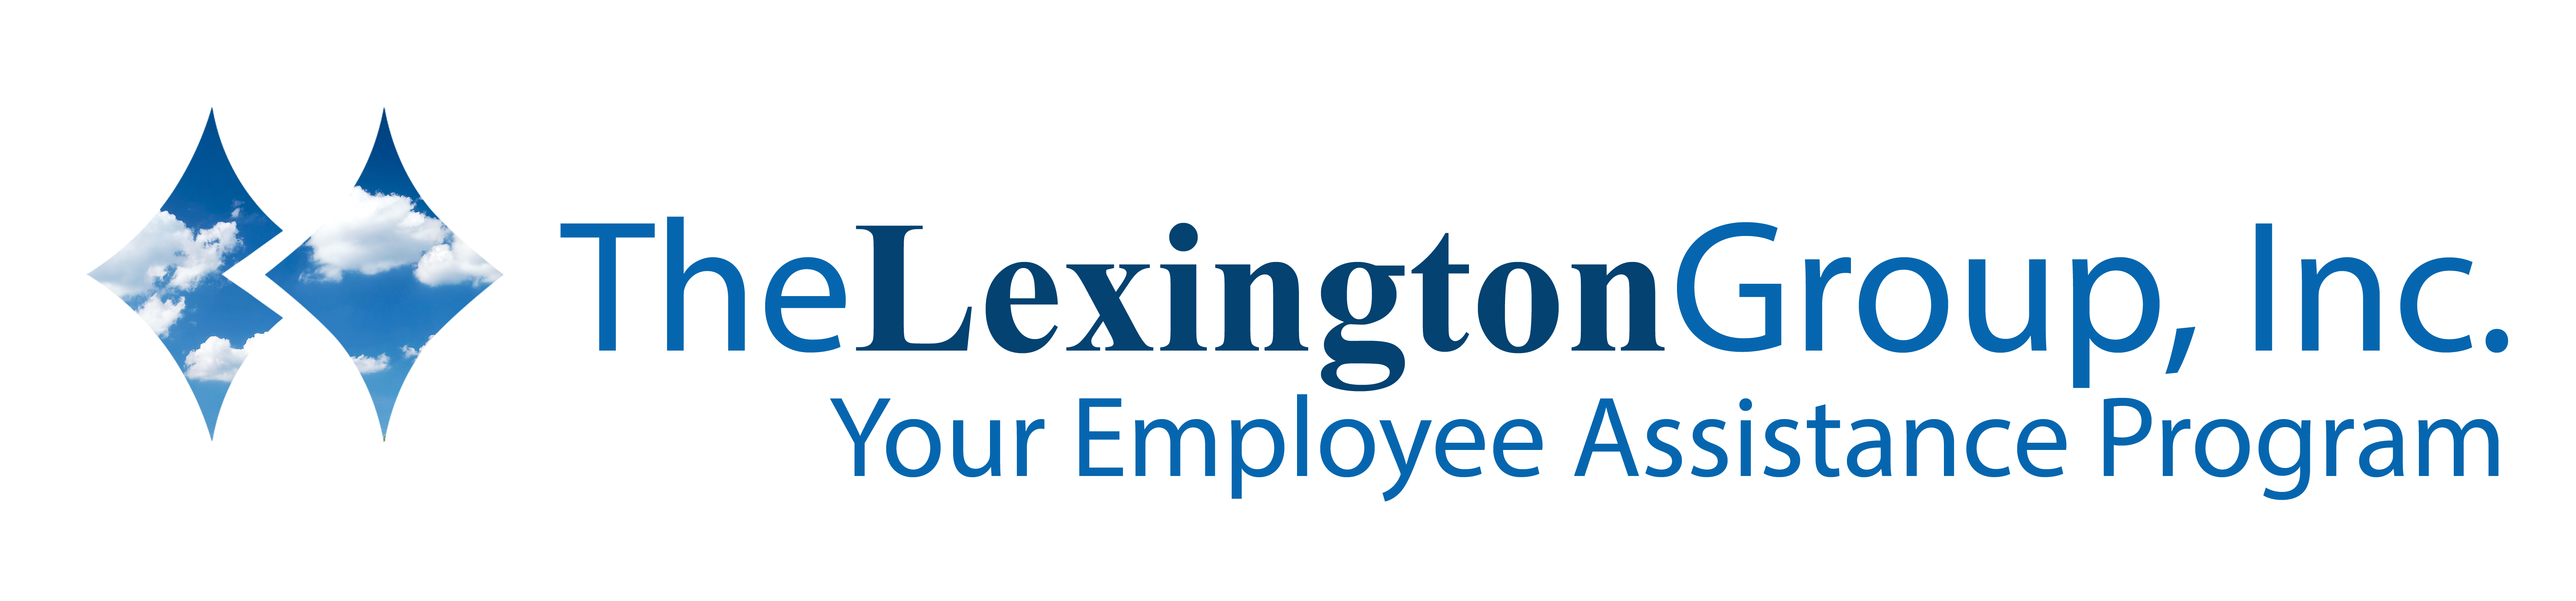 The Lexington Group: Employee Assistance Program